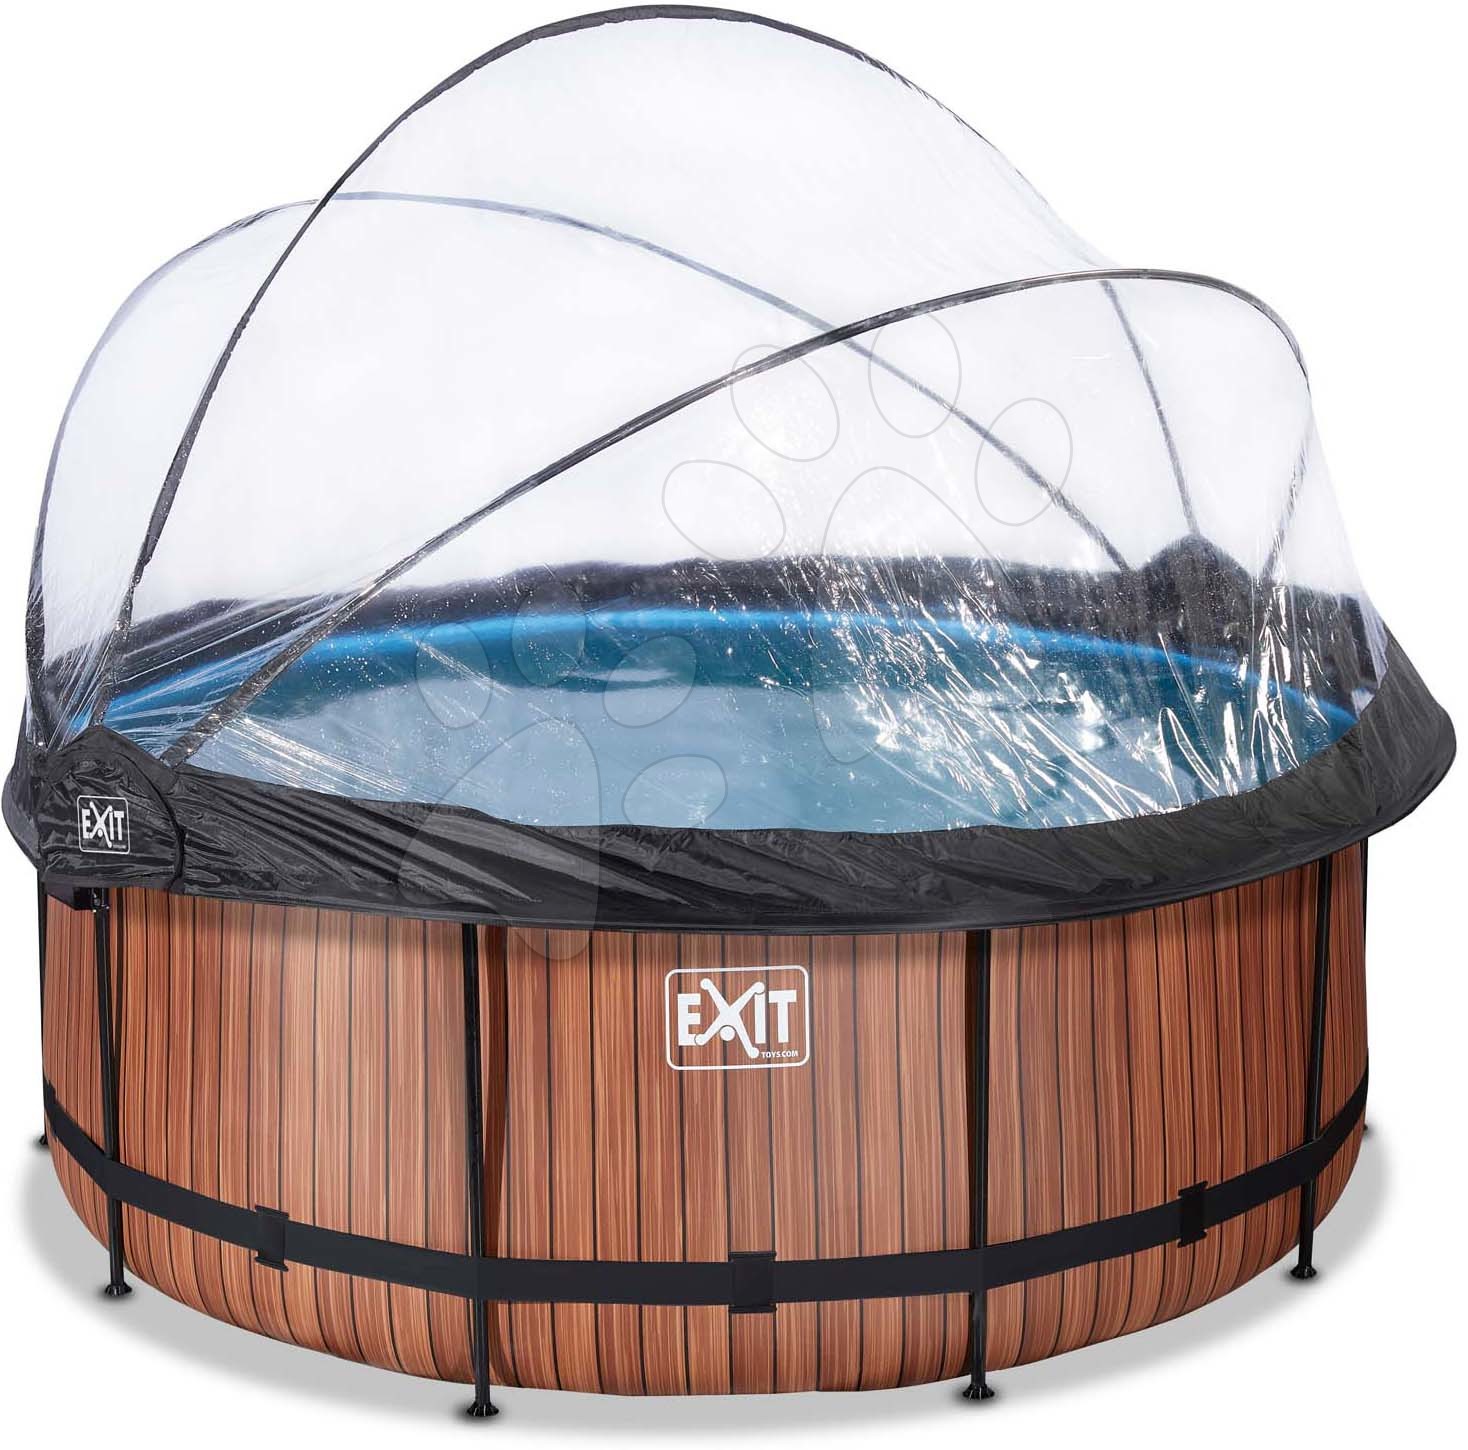 Bazén s krytem a pískovou filtrací Wood pool Exit Toys kruhový ocelová konstrukce 360*122 cm hnědý od 6 let